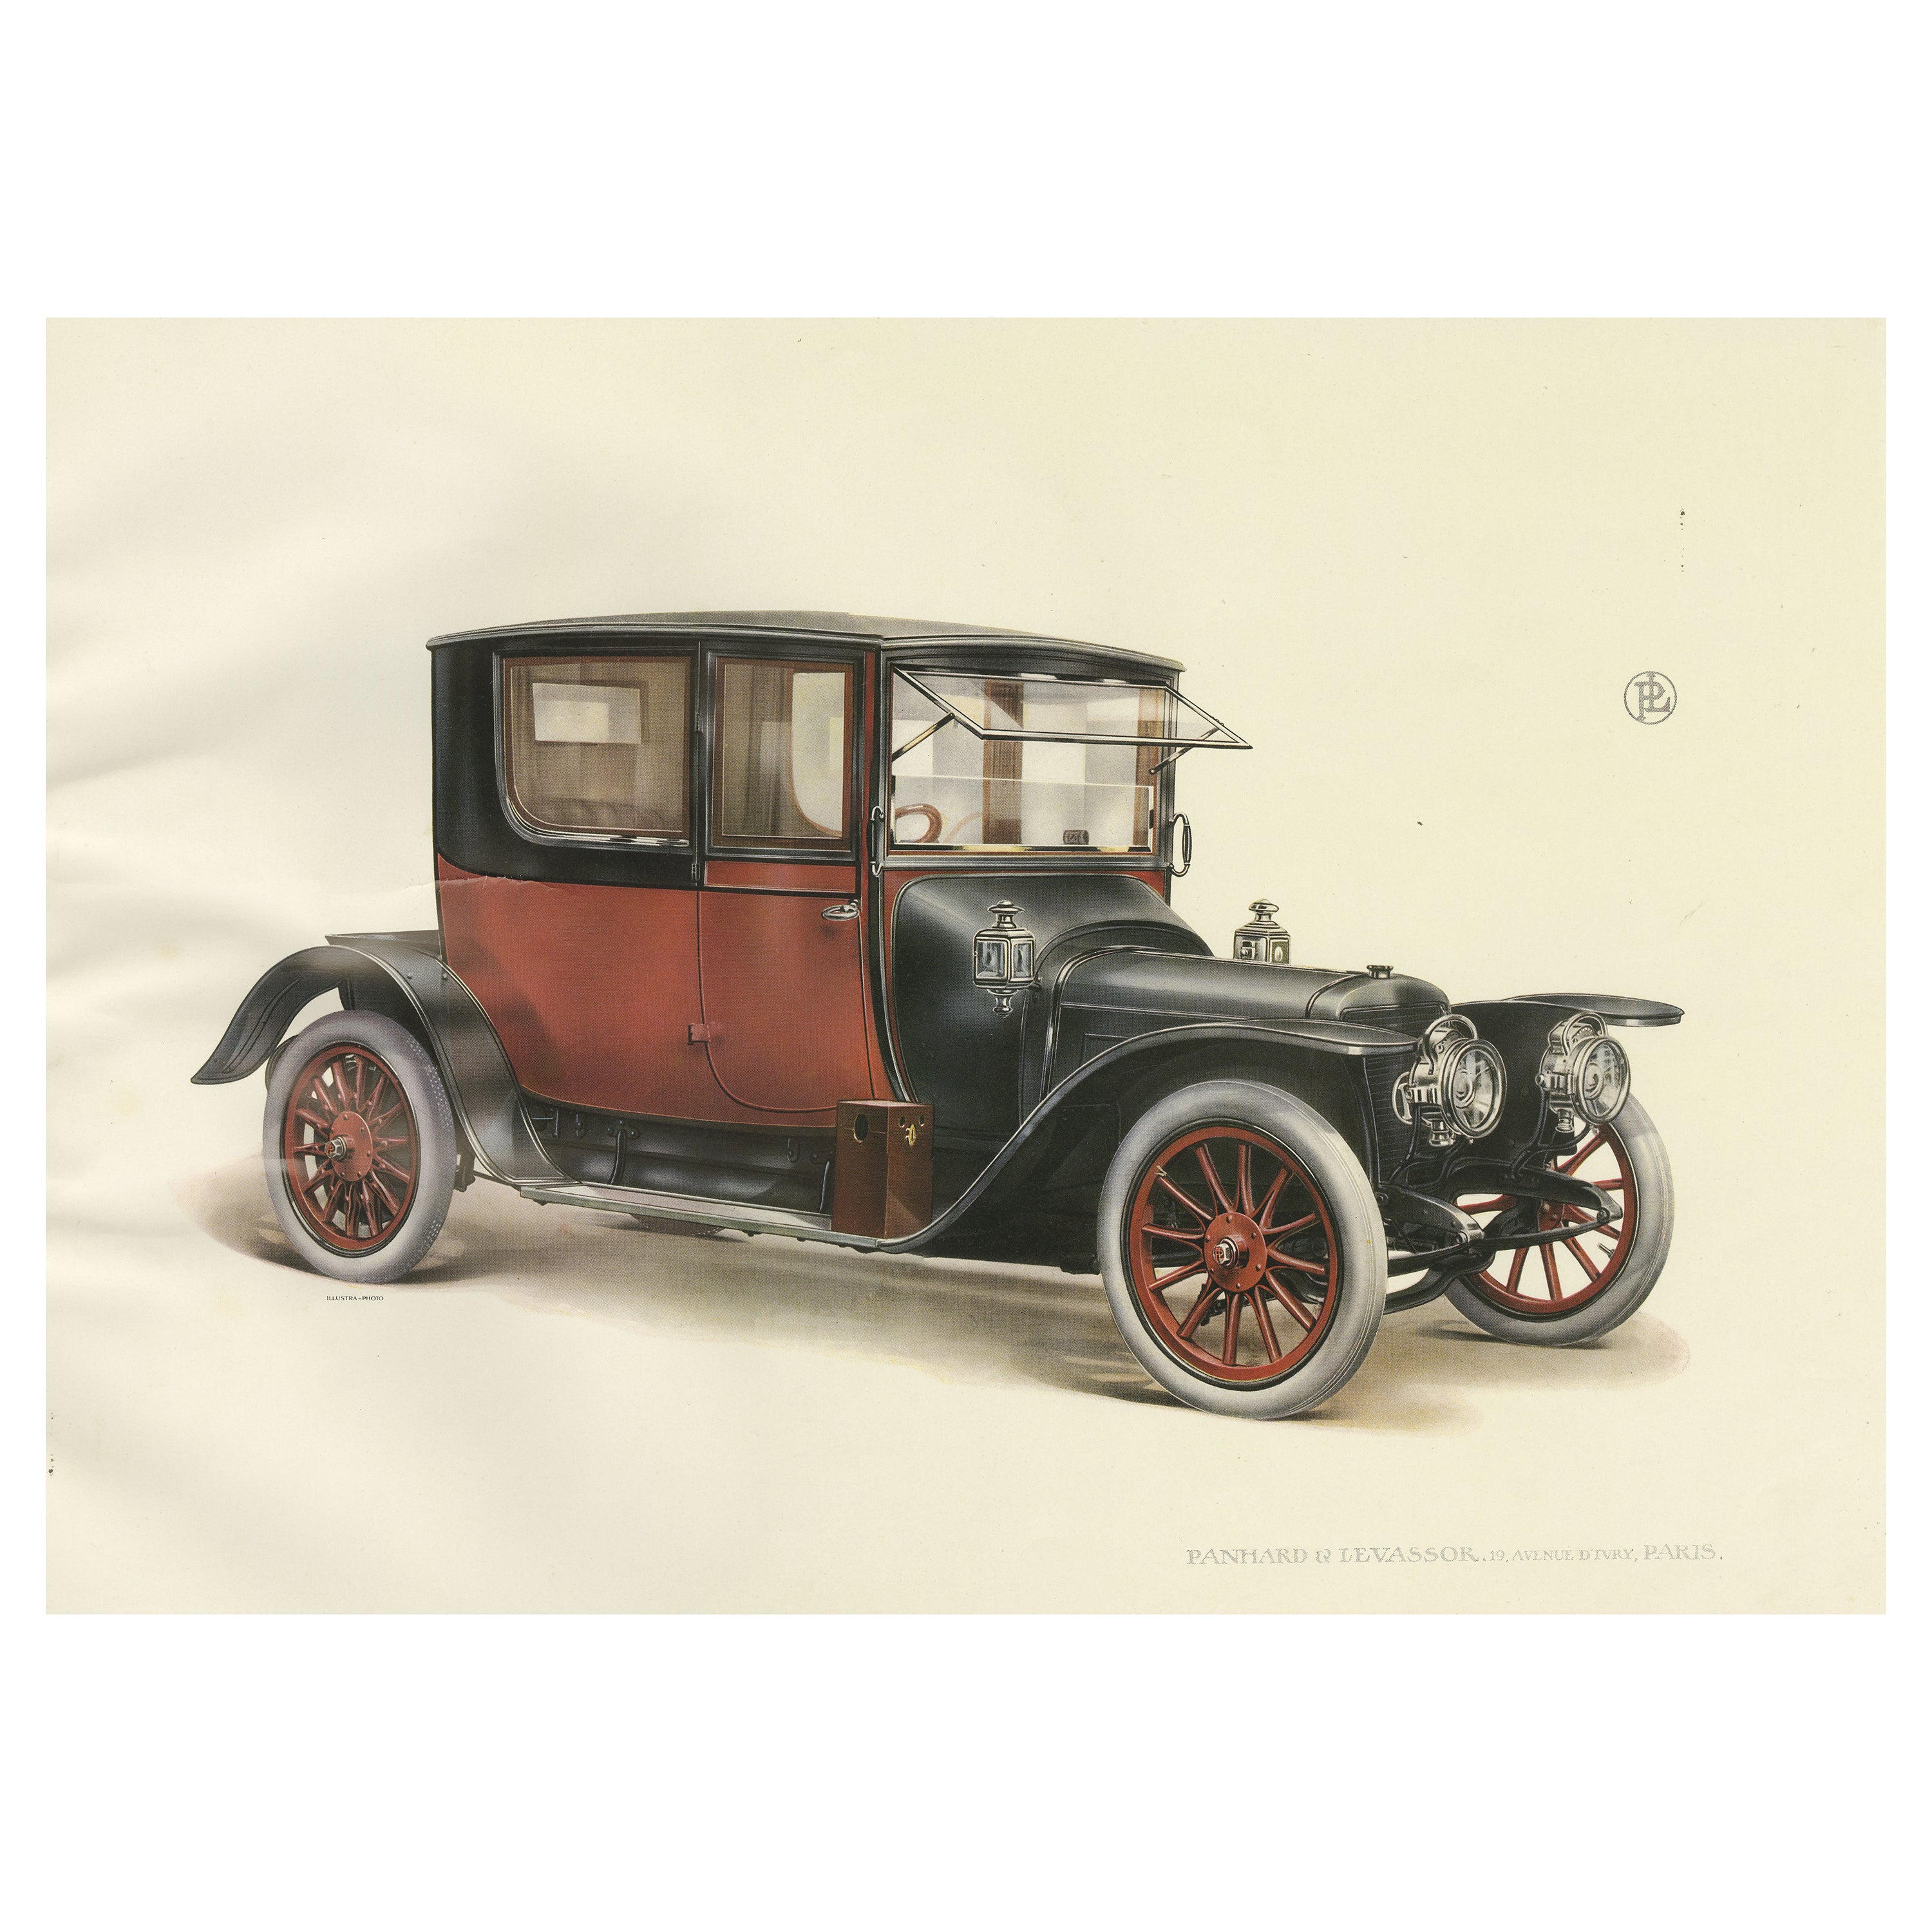 Antique Print of the Panhard Et Levassor Coupe 4pl Conduite Car, 1914